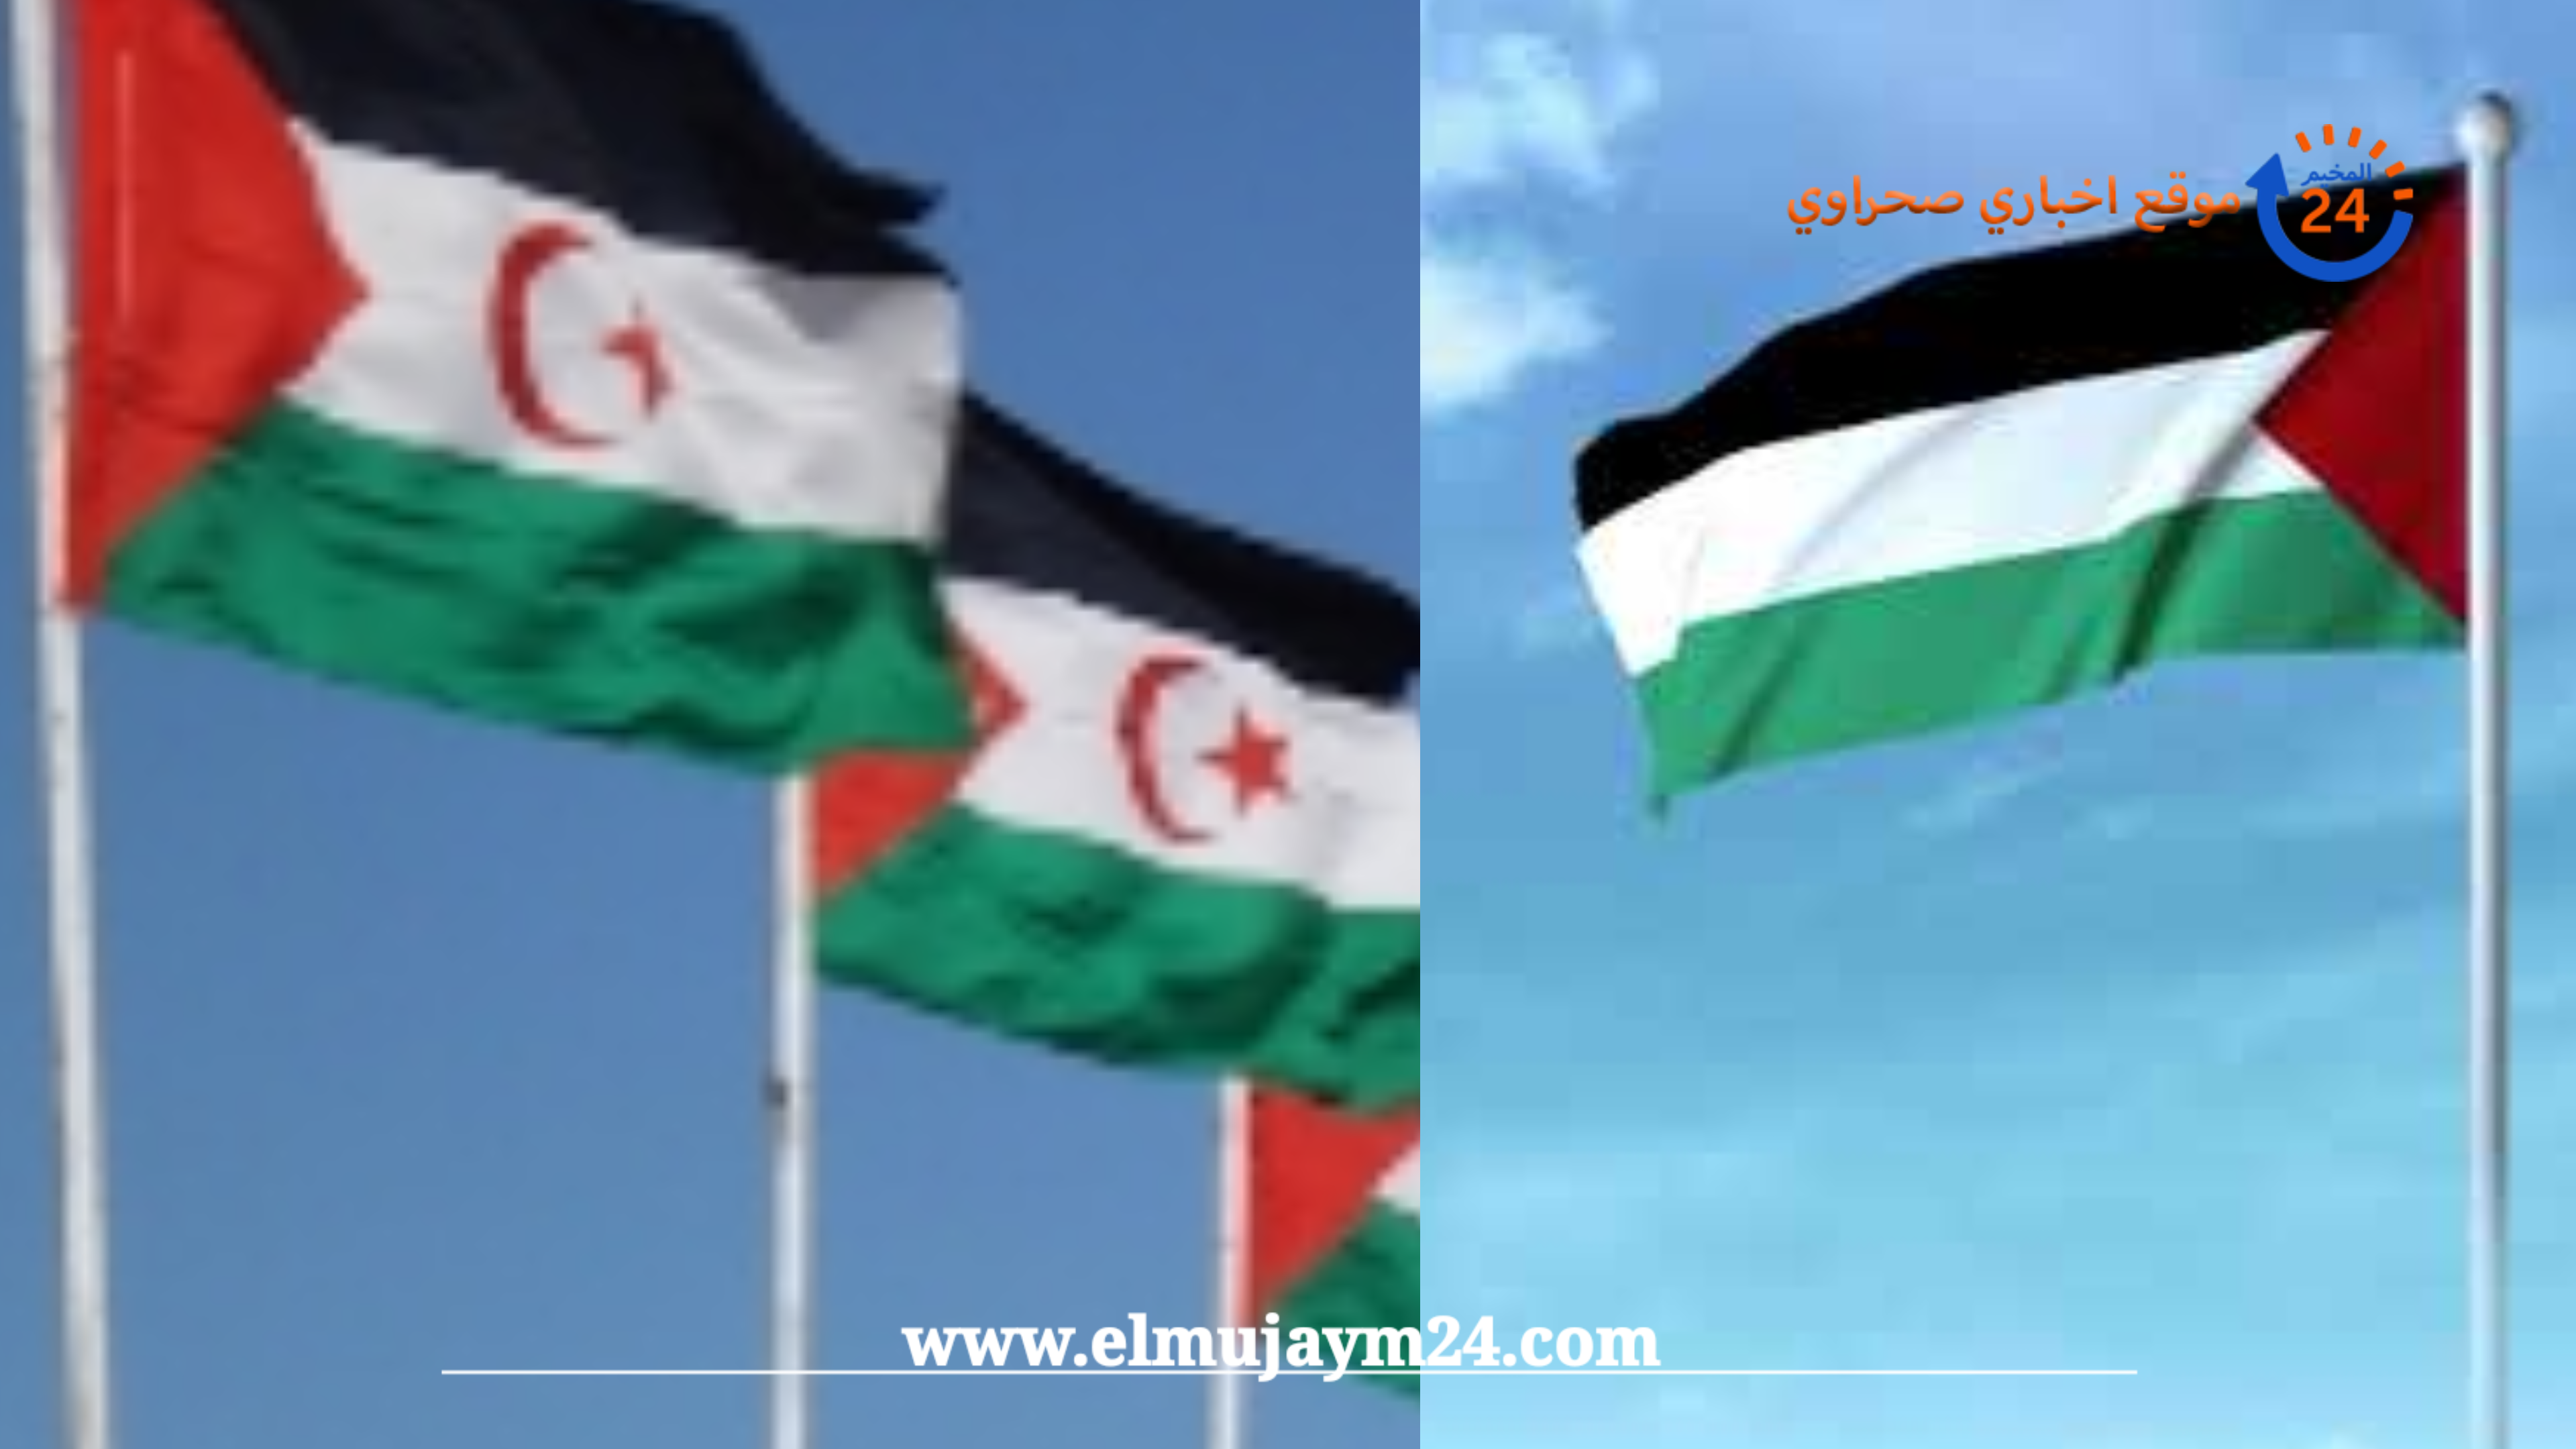 البوليساريو تجدد تضامن الشعب الصحراوي مع شقيقه الشعب الفلسطيني في حربه التحريرية العادلة